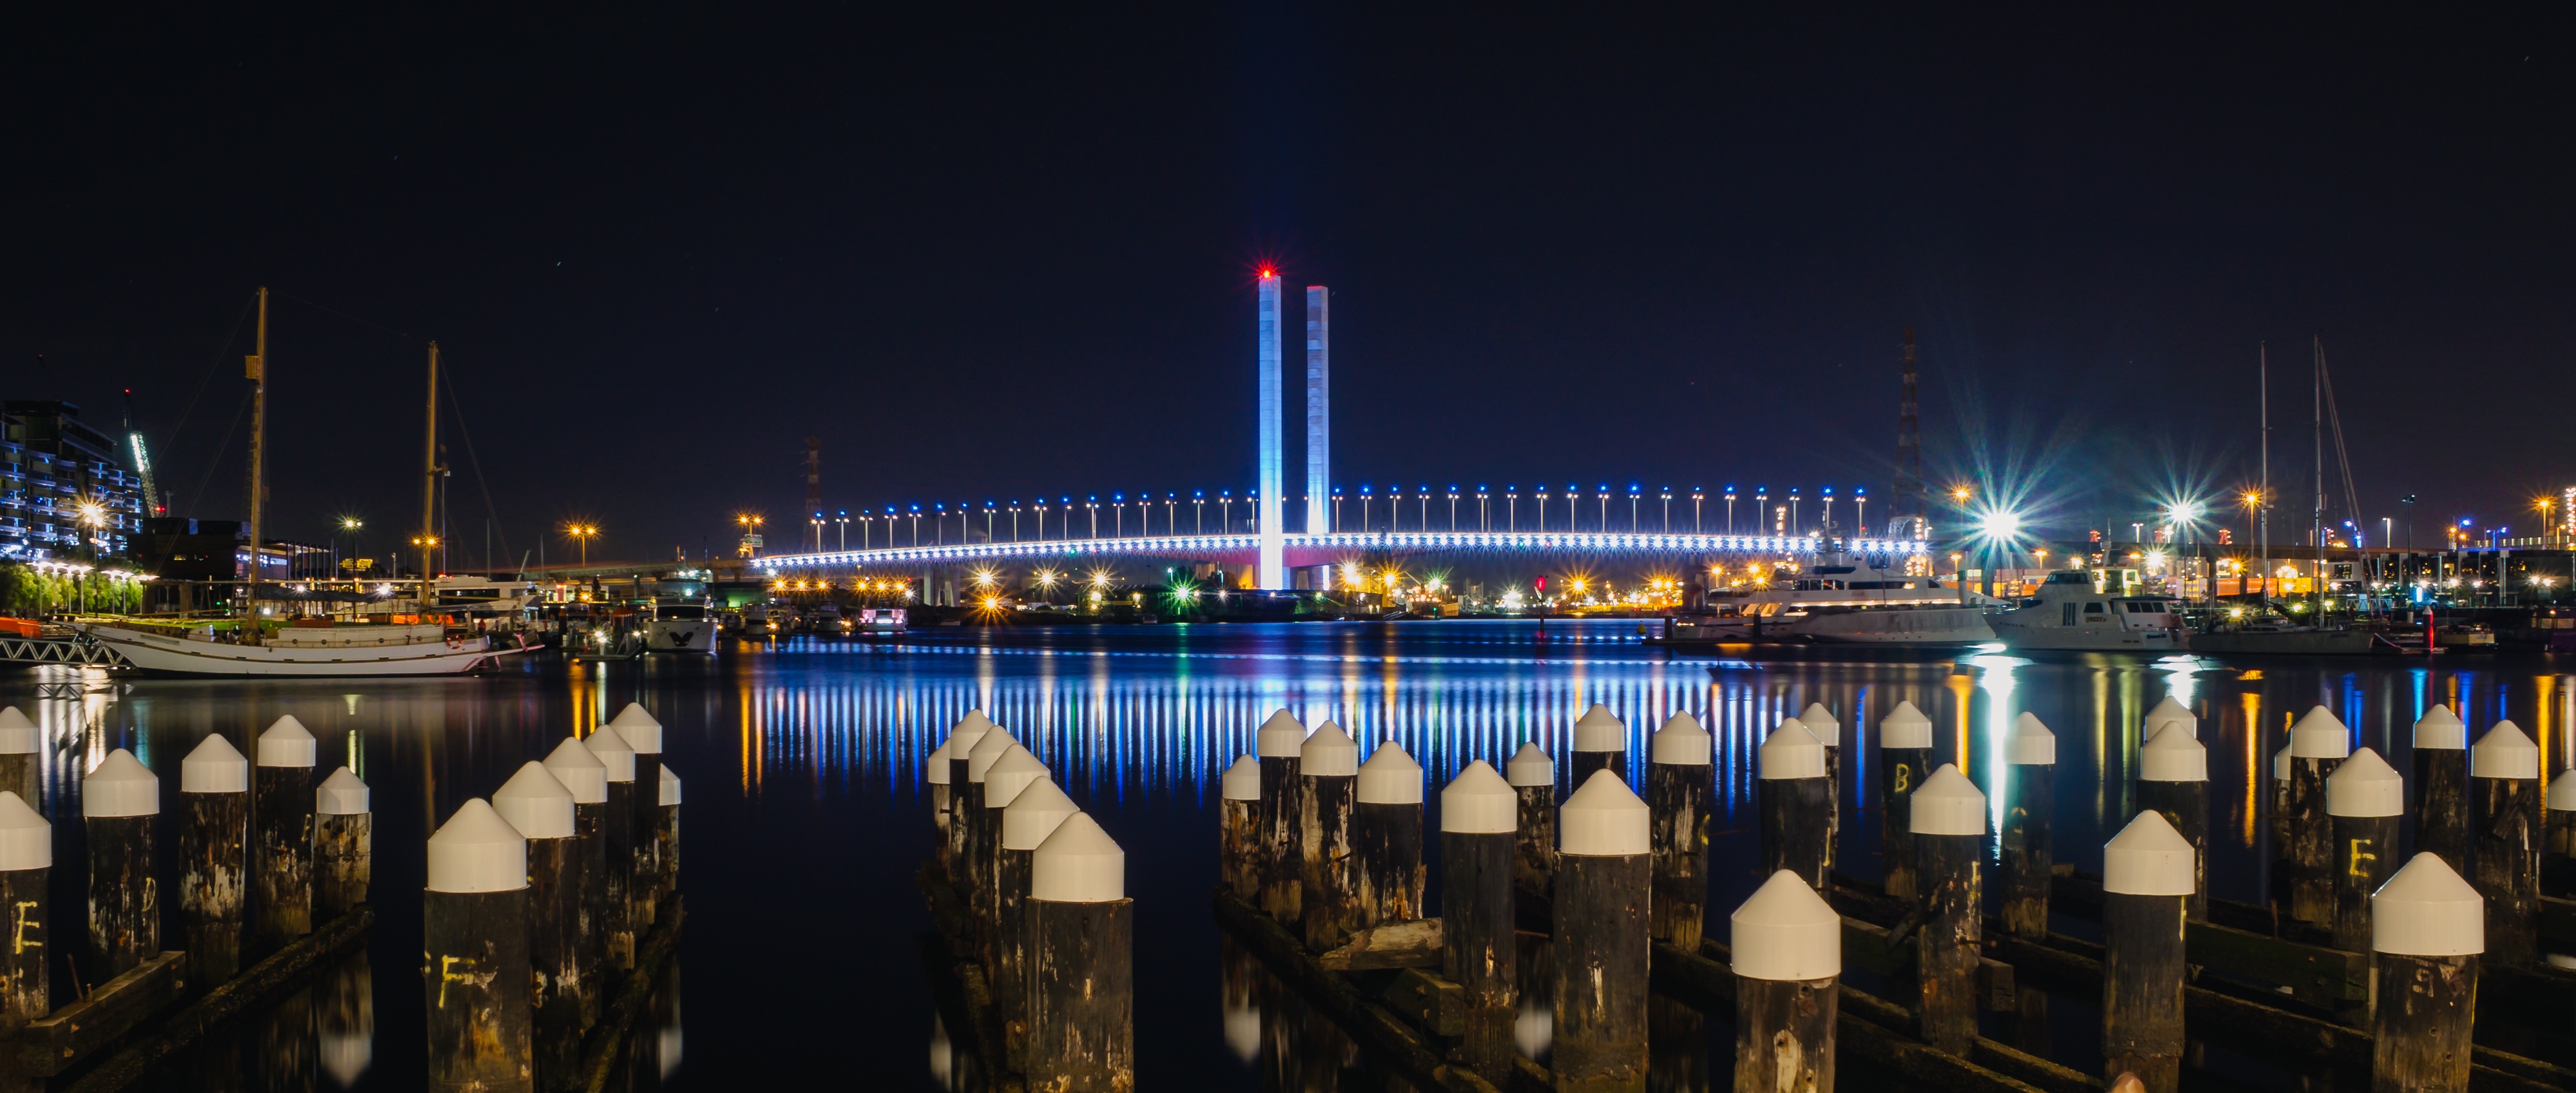 河上照明桥夜景